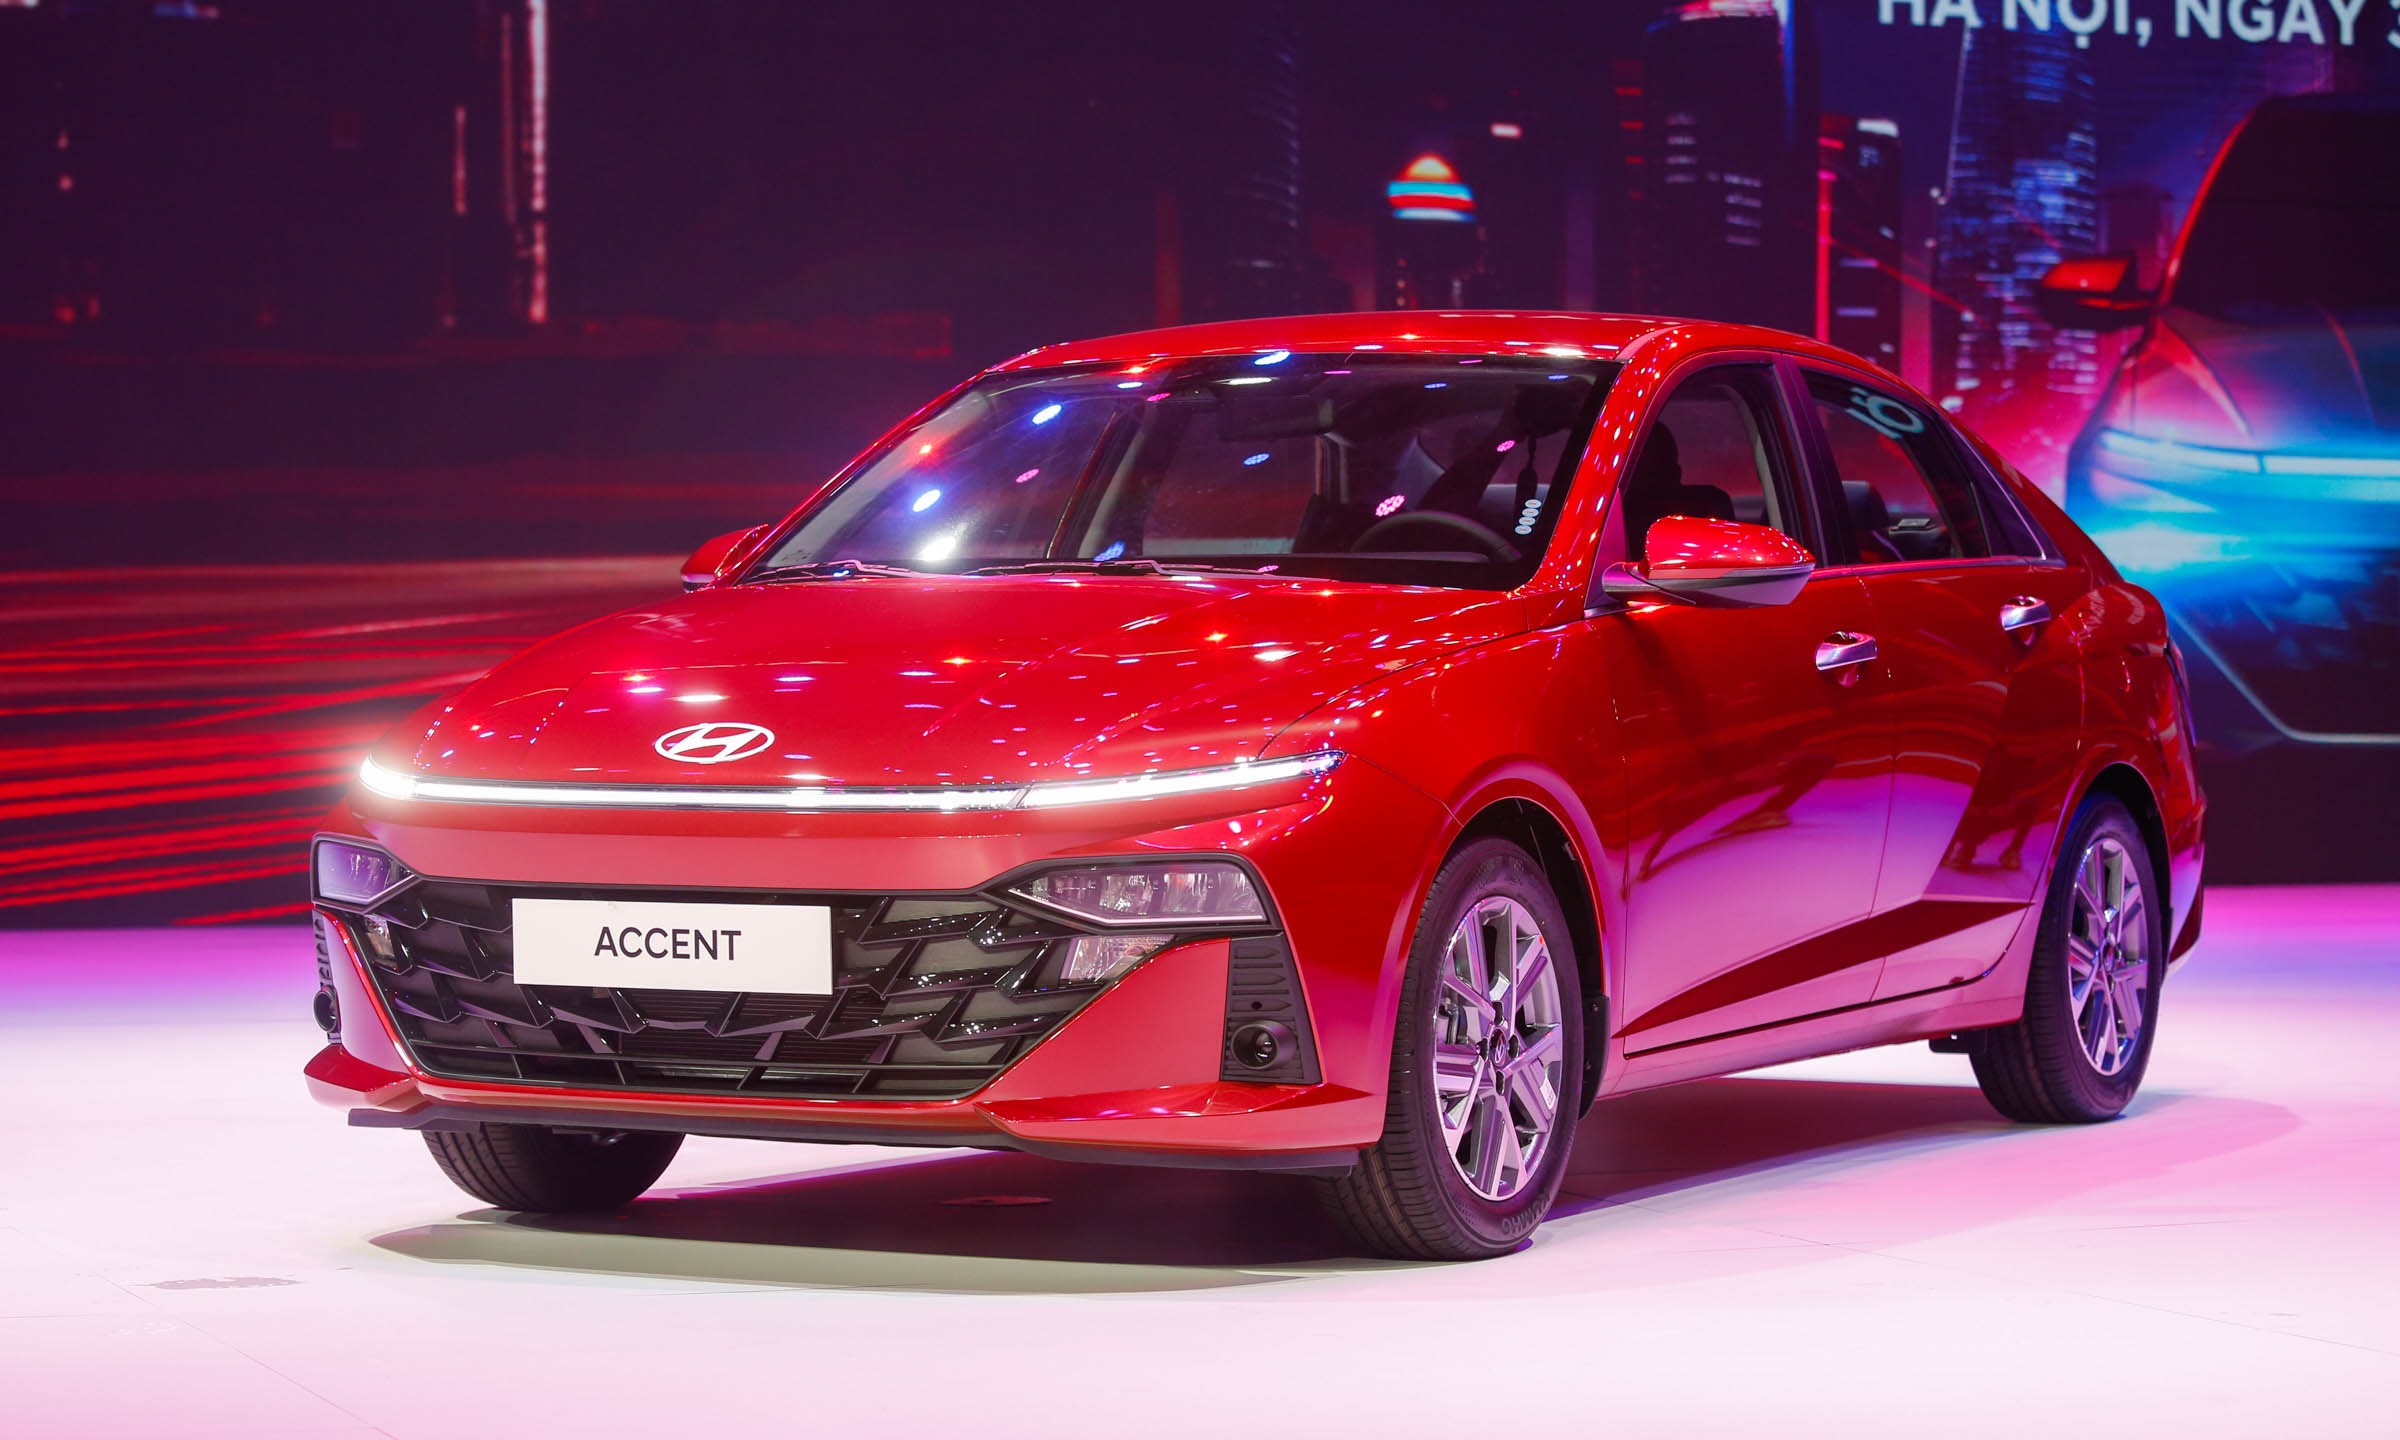 Hyundai Accent thế hệ mới ra mắt tại Hà Nội ngày 30/5. Ảnh: Lương Dũng